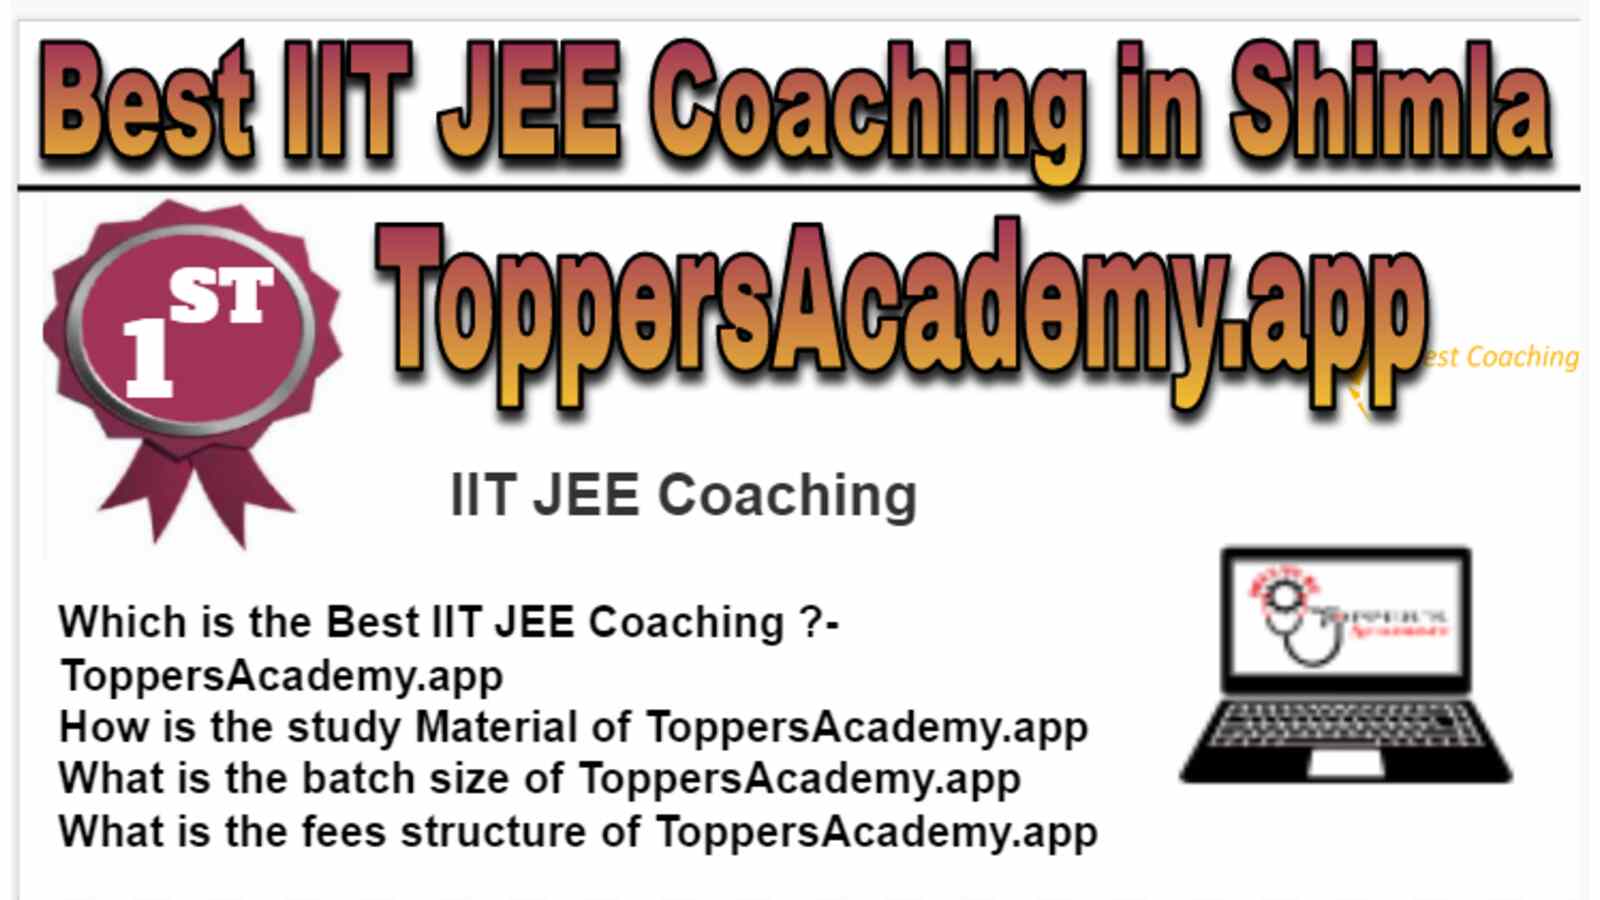 Rank 1 Best IIT JEE Coaching in Shimla